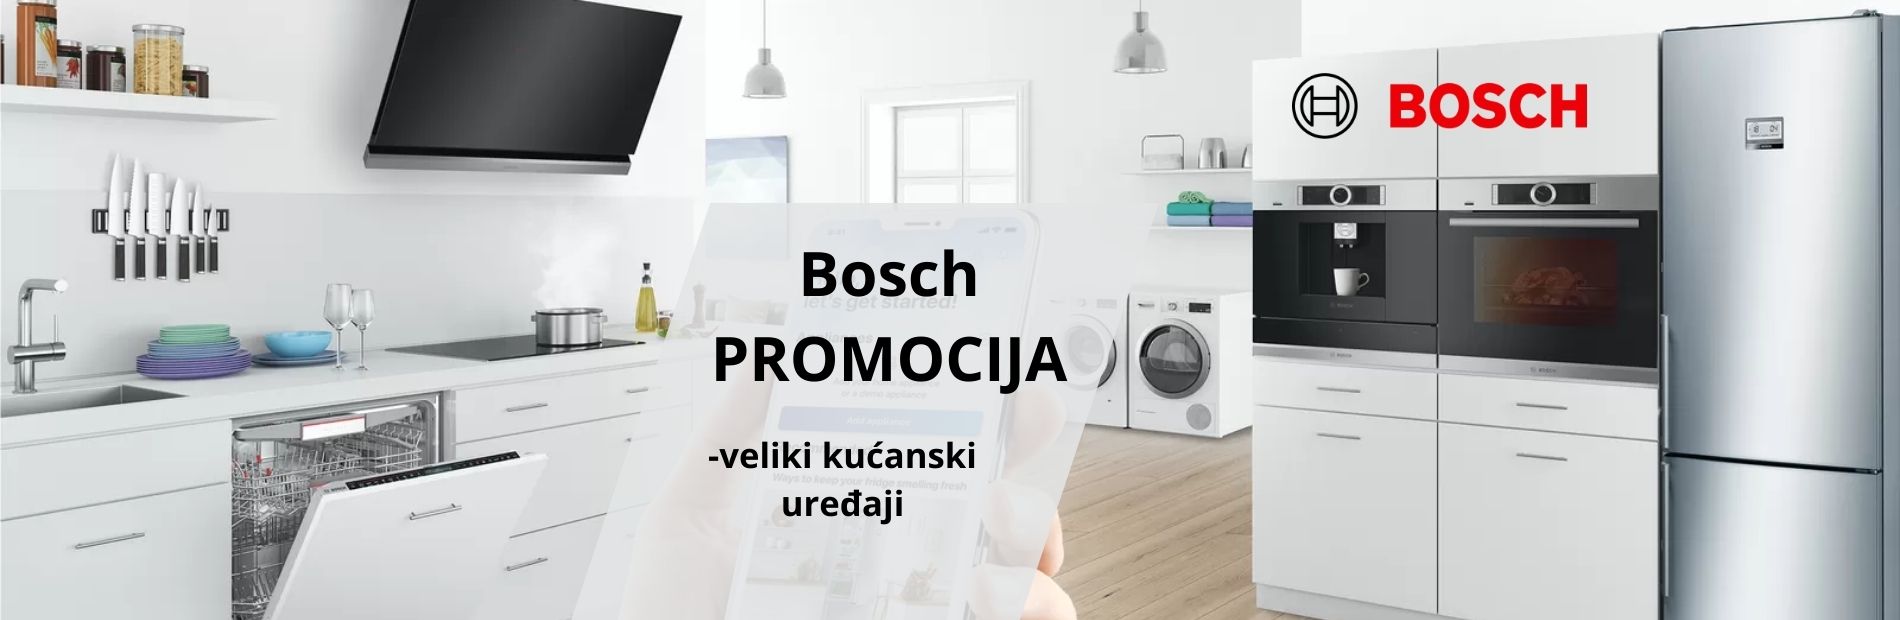 Bosch romocija